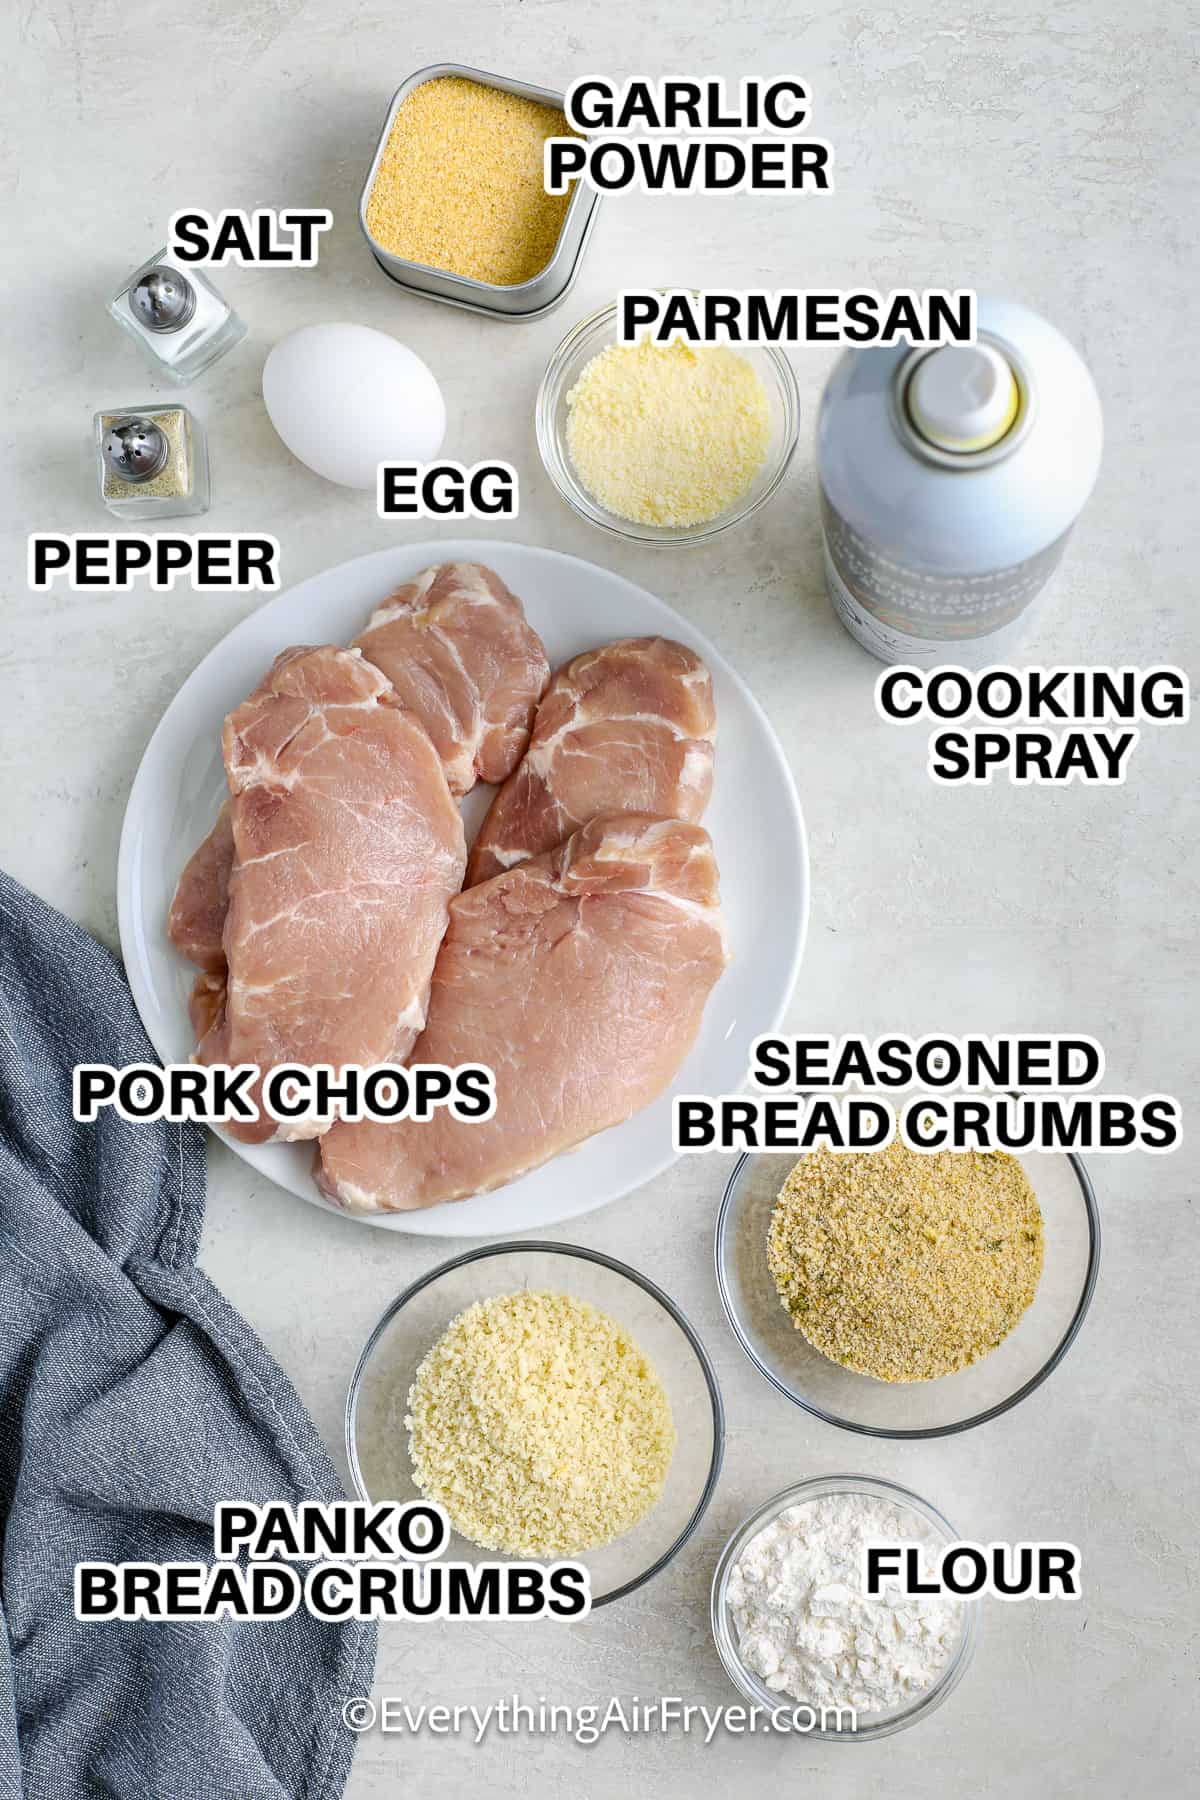 Ingredients to Make Air Fryer Breaded Pork Chops labeled: garlic powder, salt, pepper, egg, parmesan, cooking spray, pork chops, panko bread crumbs, seasoned bread crumbs, and flour.